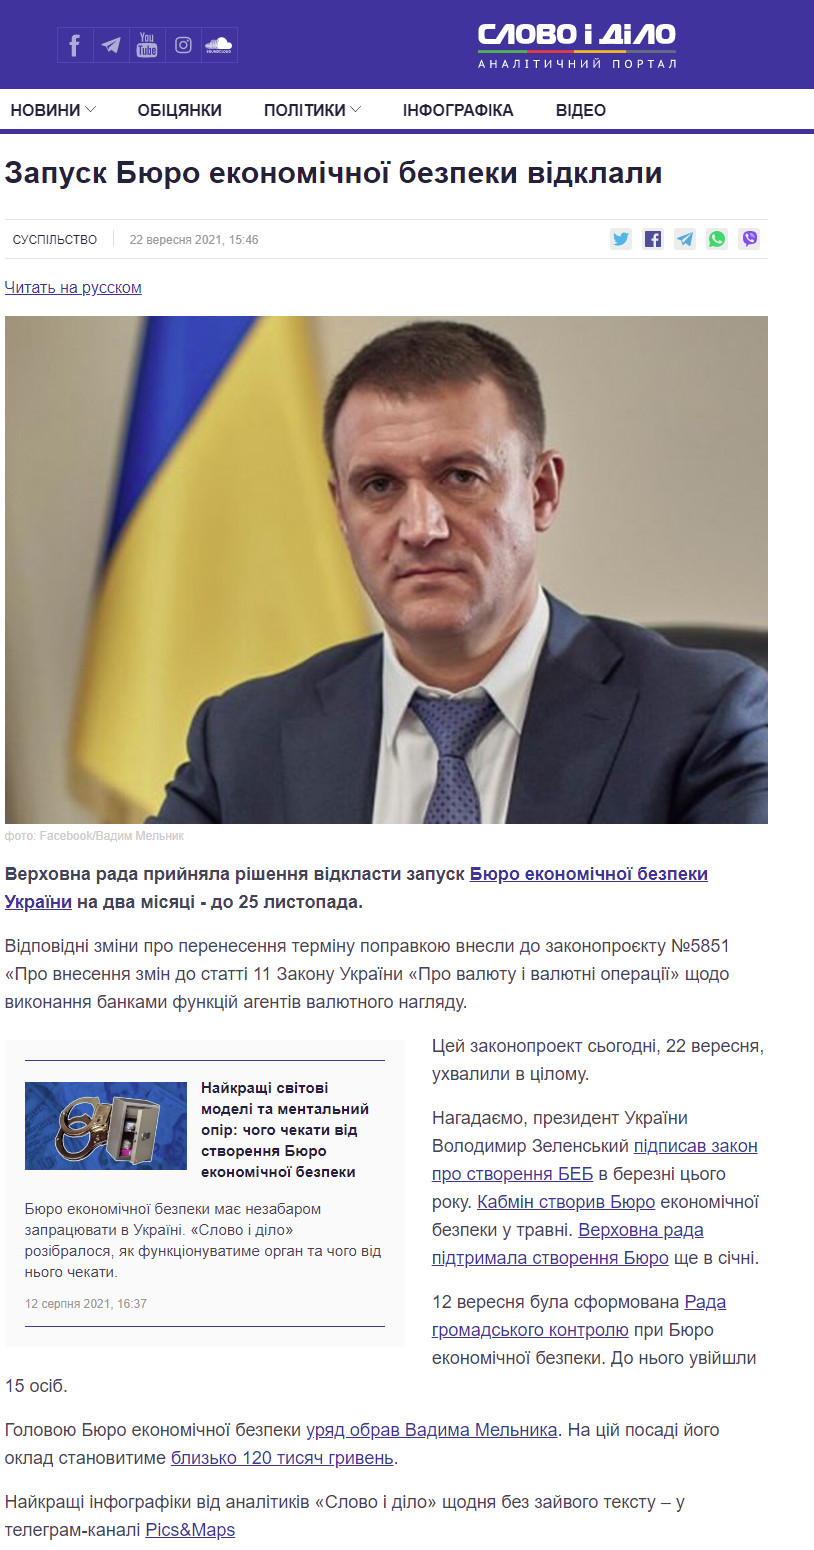 https://www.slovoidilo.ua/2021/09/22/novyna/suspilstvo/zapusk-byuro-ekonomichnoyi-bezpeky-vidklaly